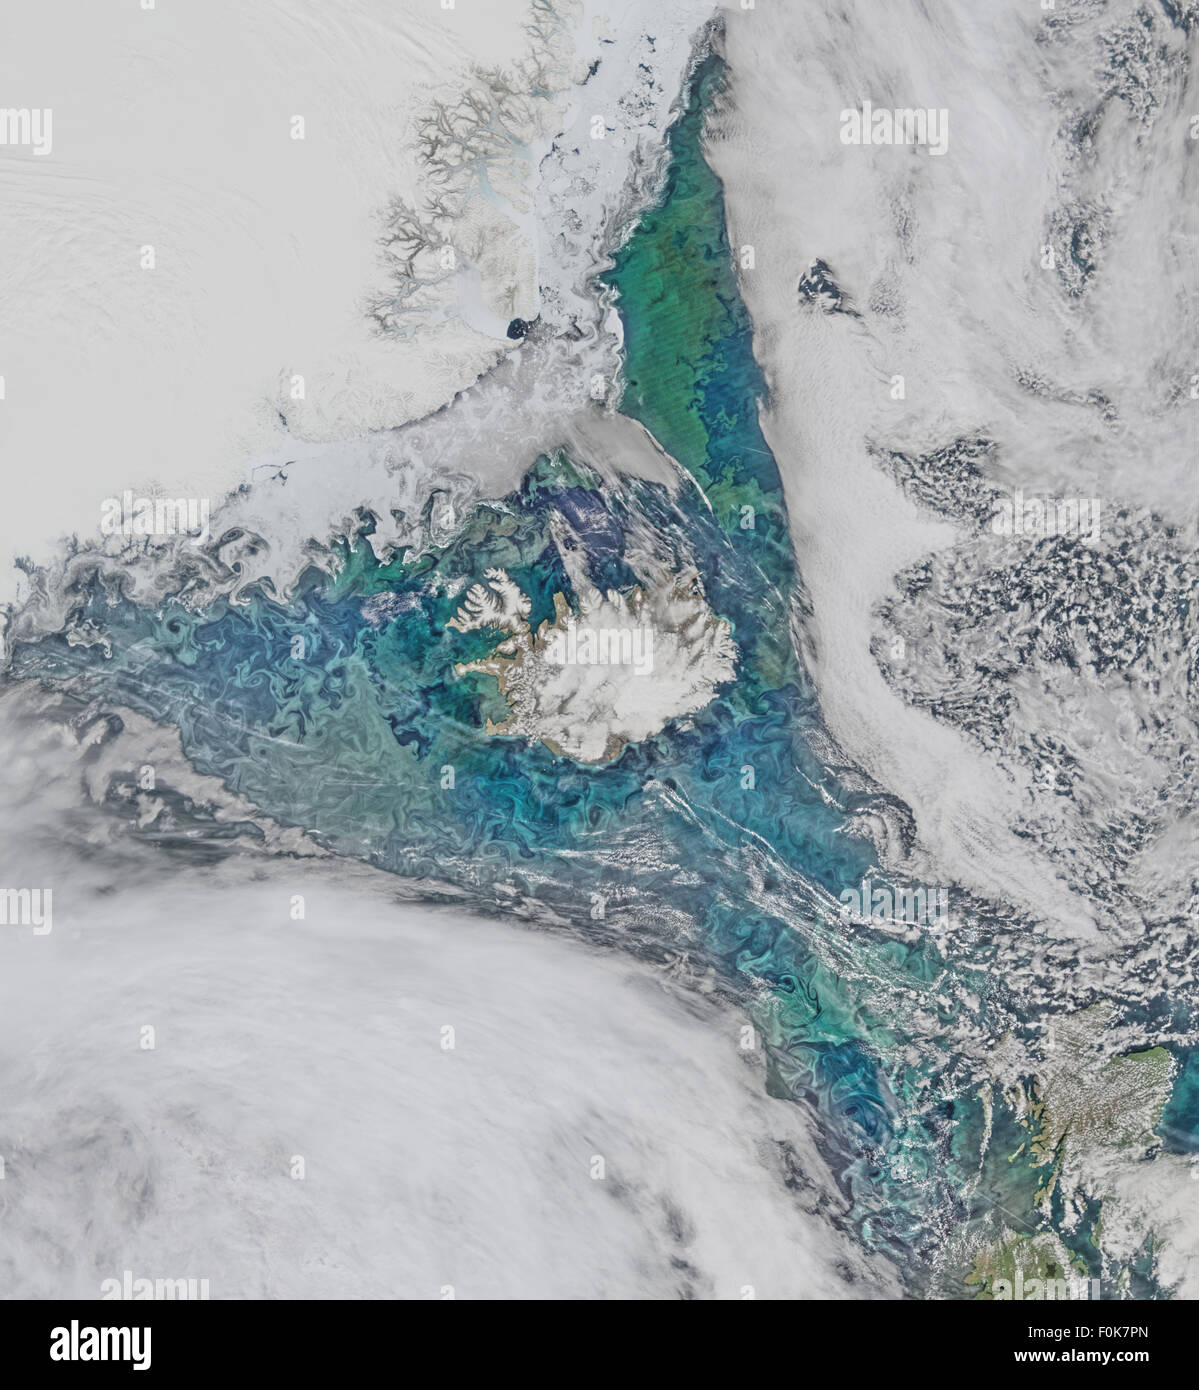 Les communautés de phytoplancton et de la glace de mer l'écoulement turbulent limn champ autour de l'Islande dans ce Suomi-NPP/scène VIIRS recueillis le 14 juin 2015. Banque D'Images